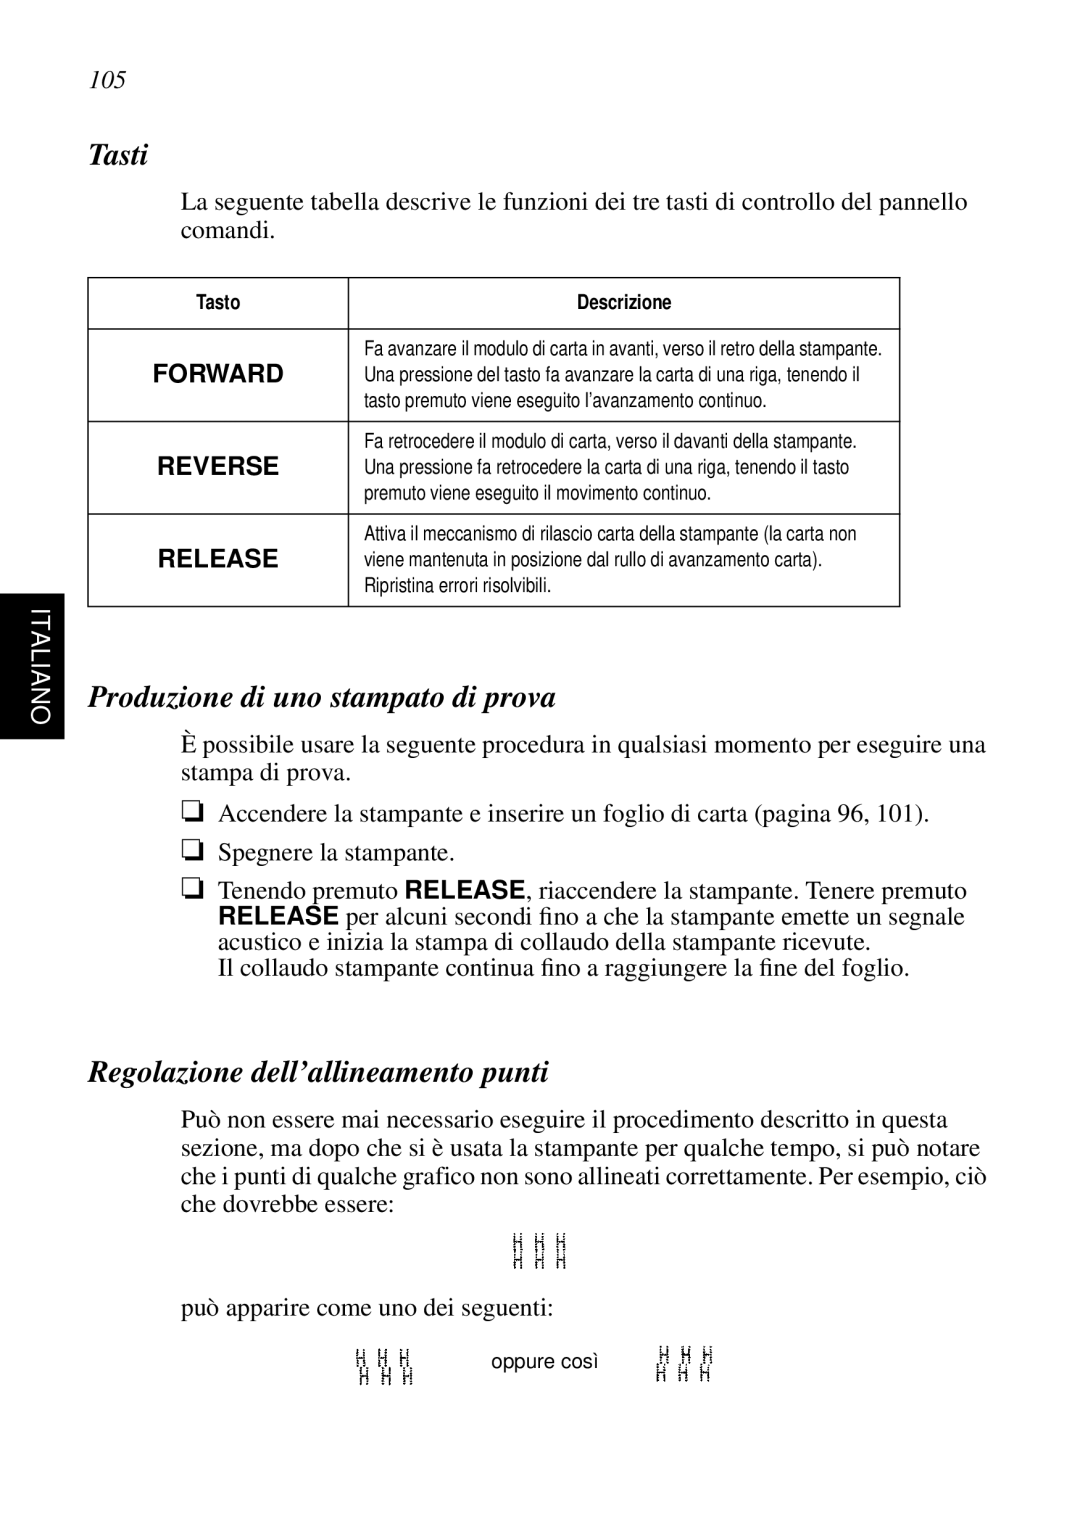 Star Micronics SP298 Tasti, Produzione di uno stampato di prova, Regolazione dell’allineamento punti, Italiano, Forward 